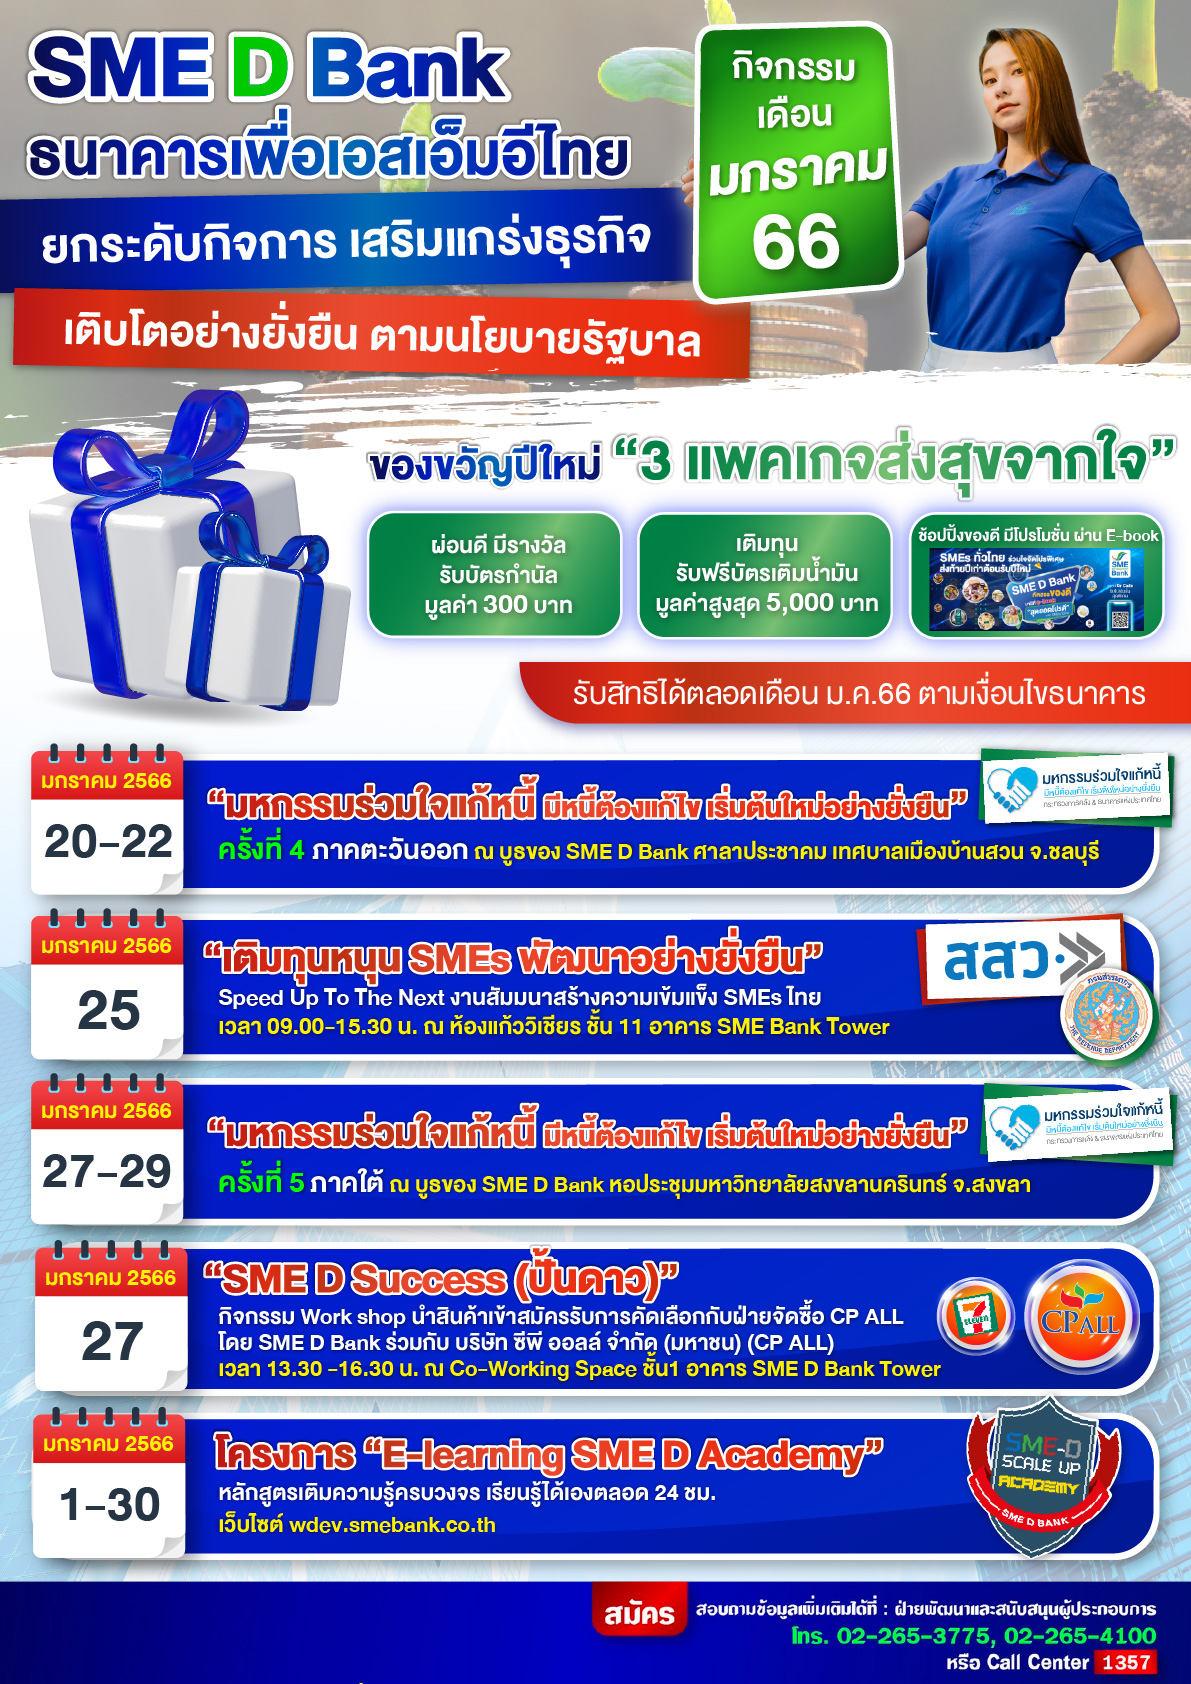 SME D Bank จัดให้ 6 กิจกรรมพัฒนาเอสเอ็มอีไทย รับศักราชใหม่   เติมความรู้เข้าถึงแหล่งทุน ยกระดับธุรกิจเติบโตยั่งยืน ตลอดเดือน ม.ค.66